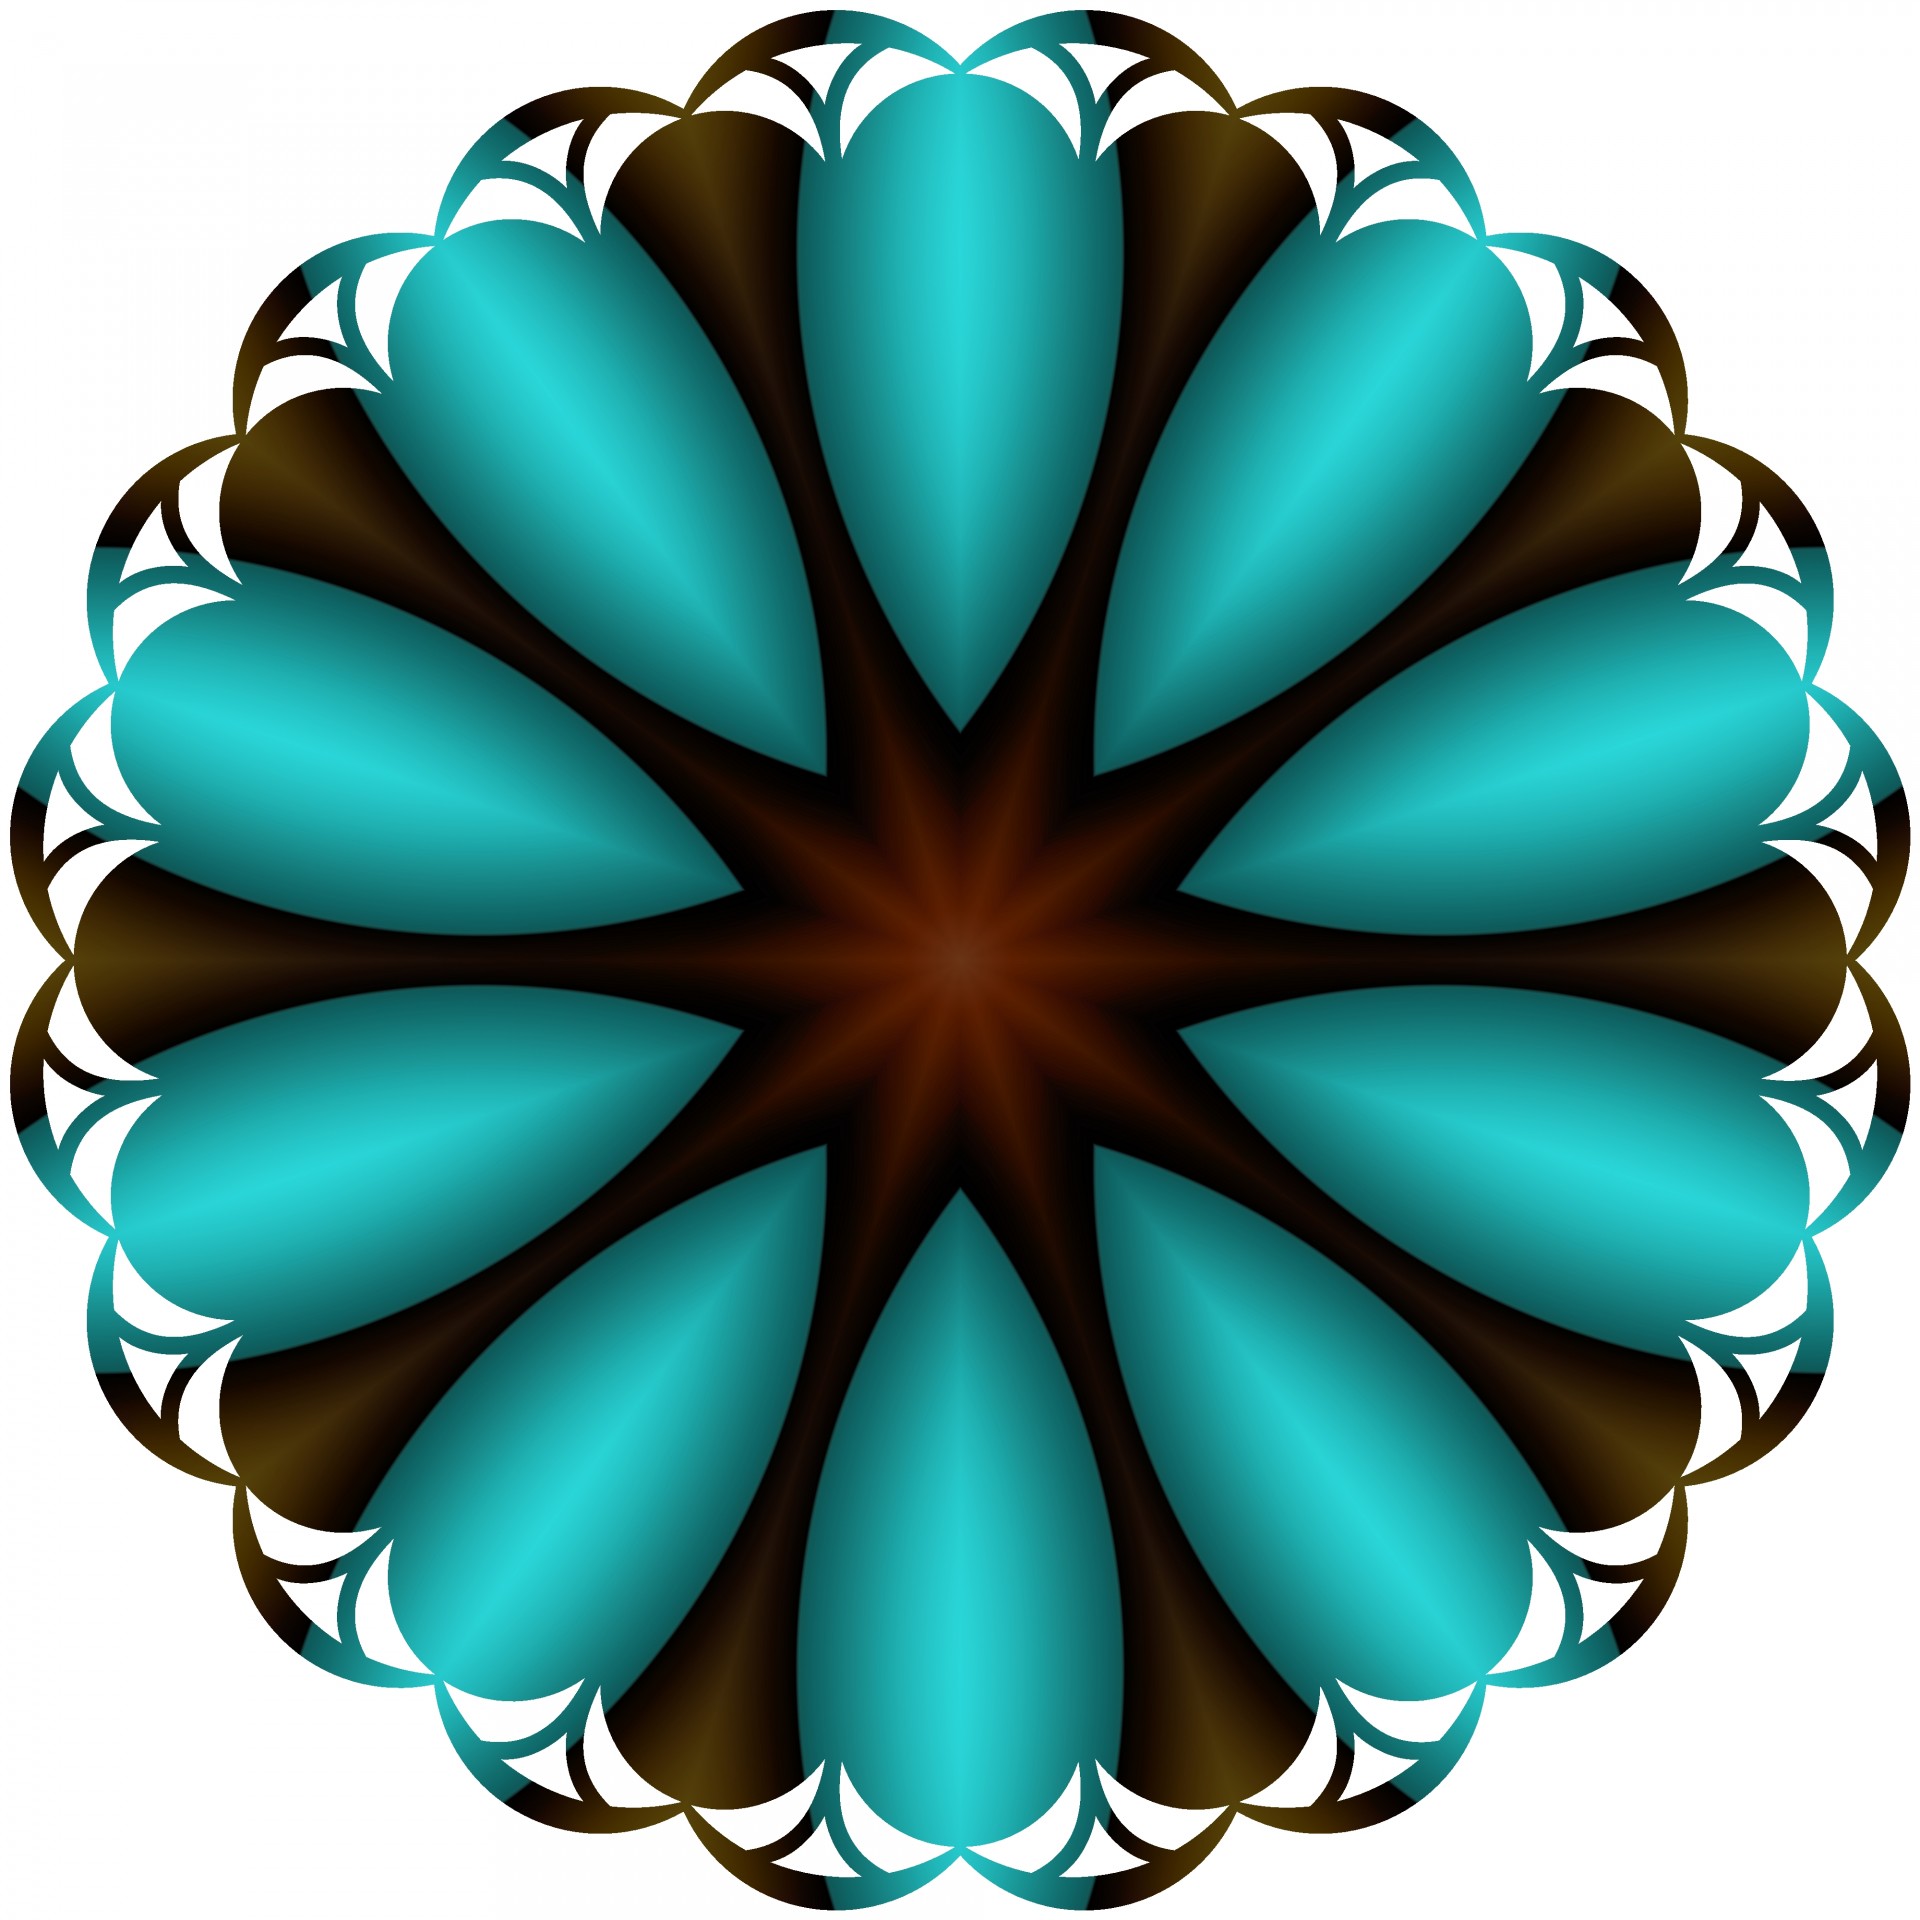 blue petals symbol free photo